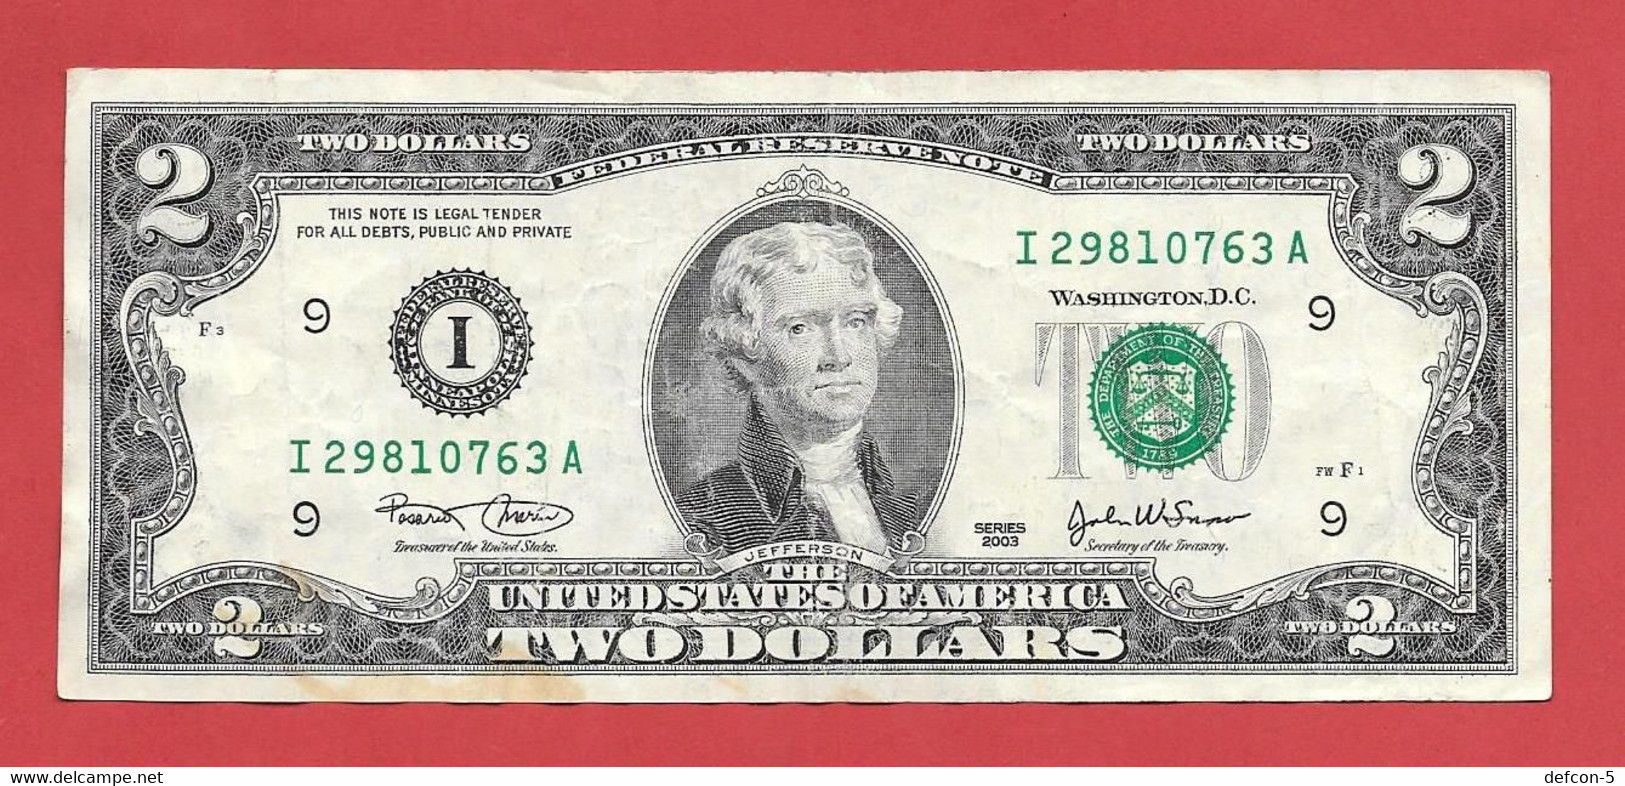 Rarität ! 1X 2 US-Dollar Auf Informations-Blatt [2003] > I 29810763 A < {$002-002BL} - Nationale Valuta